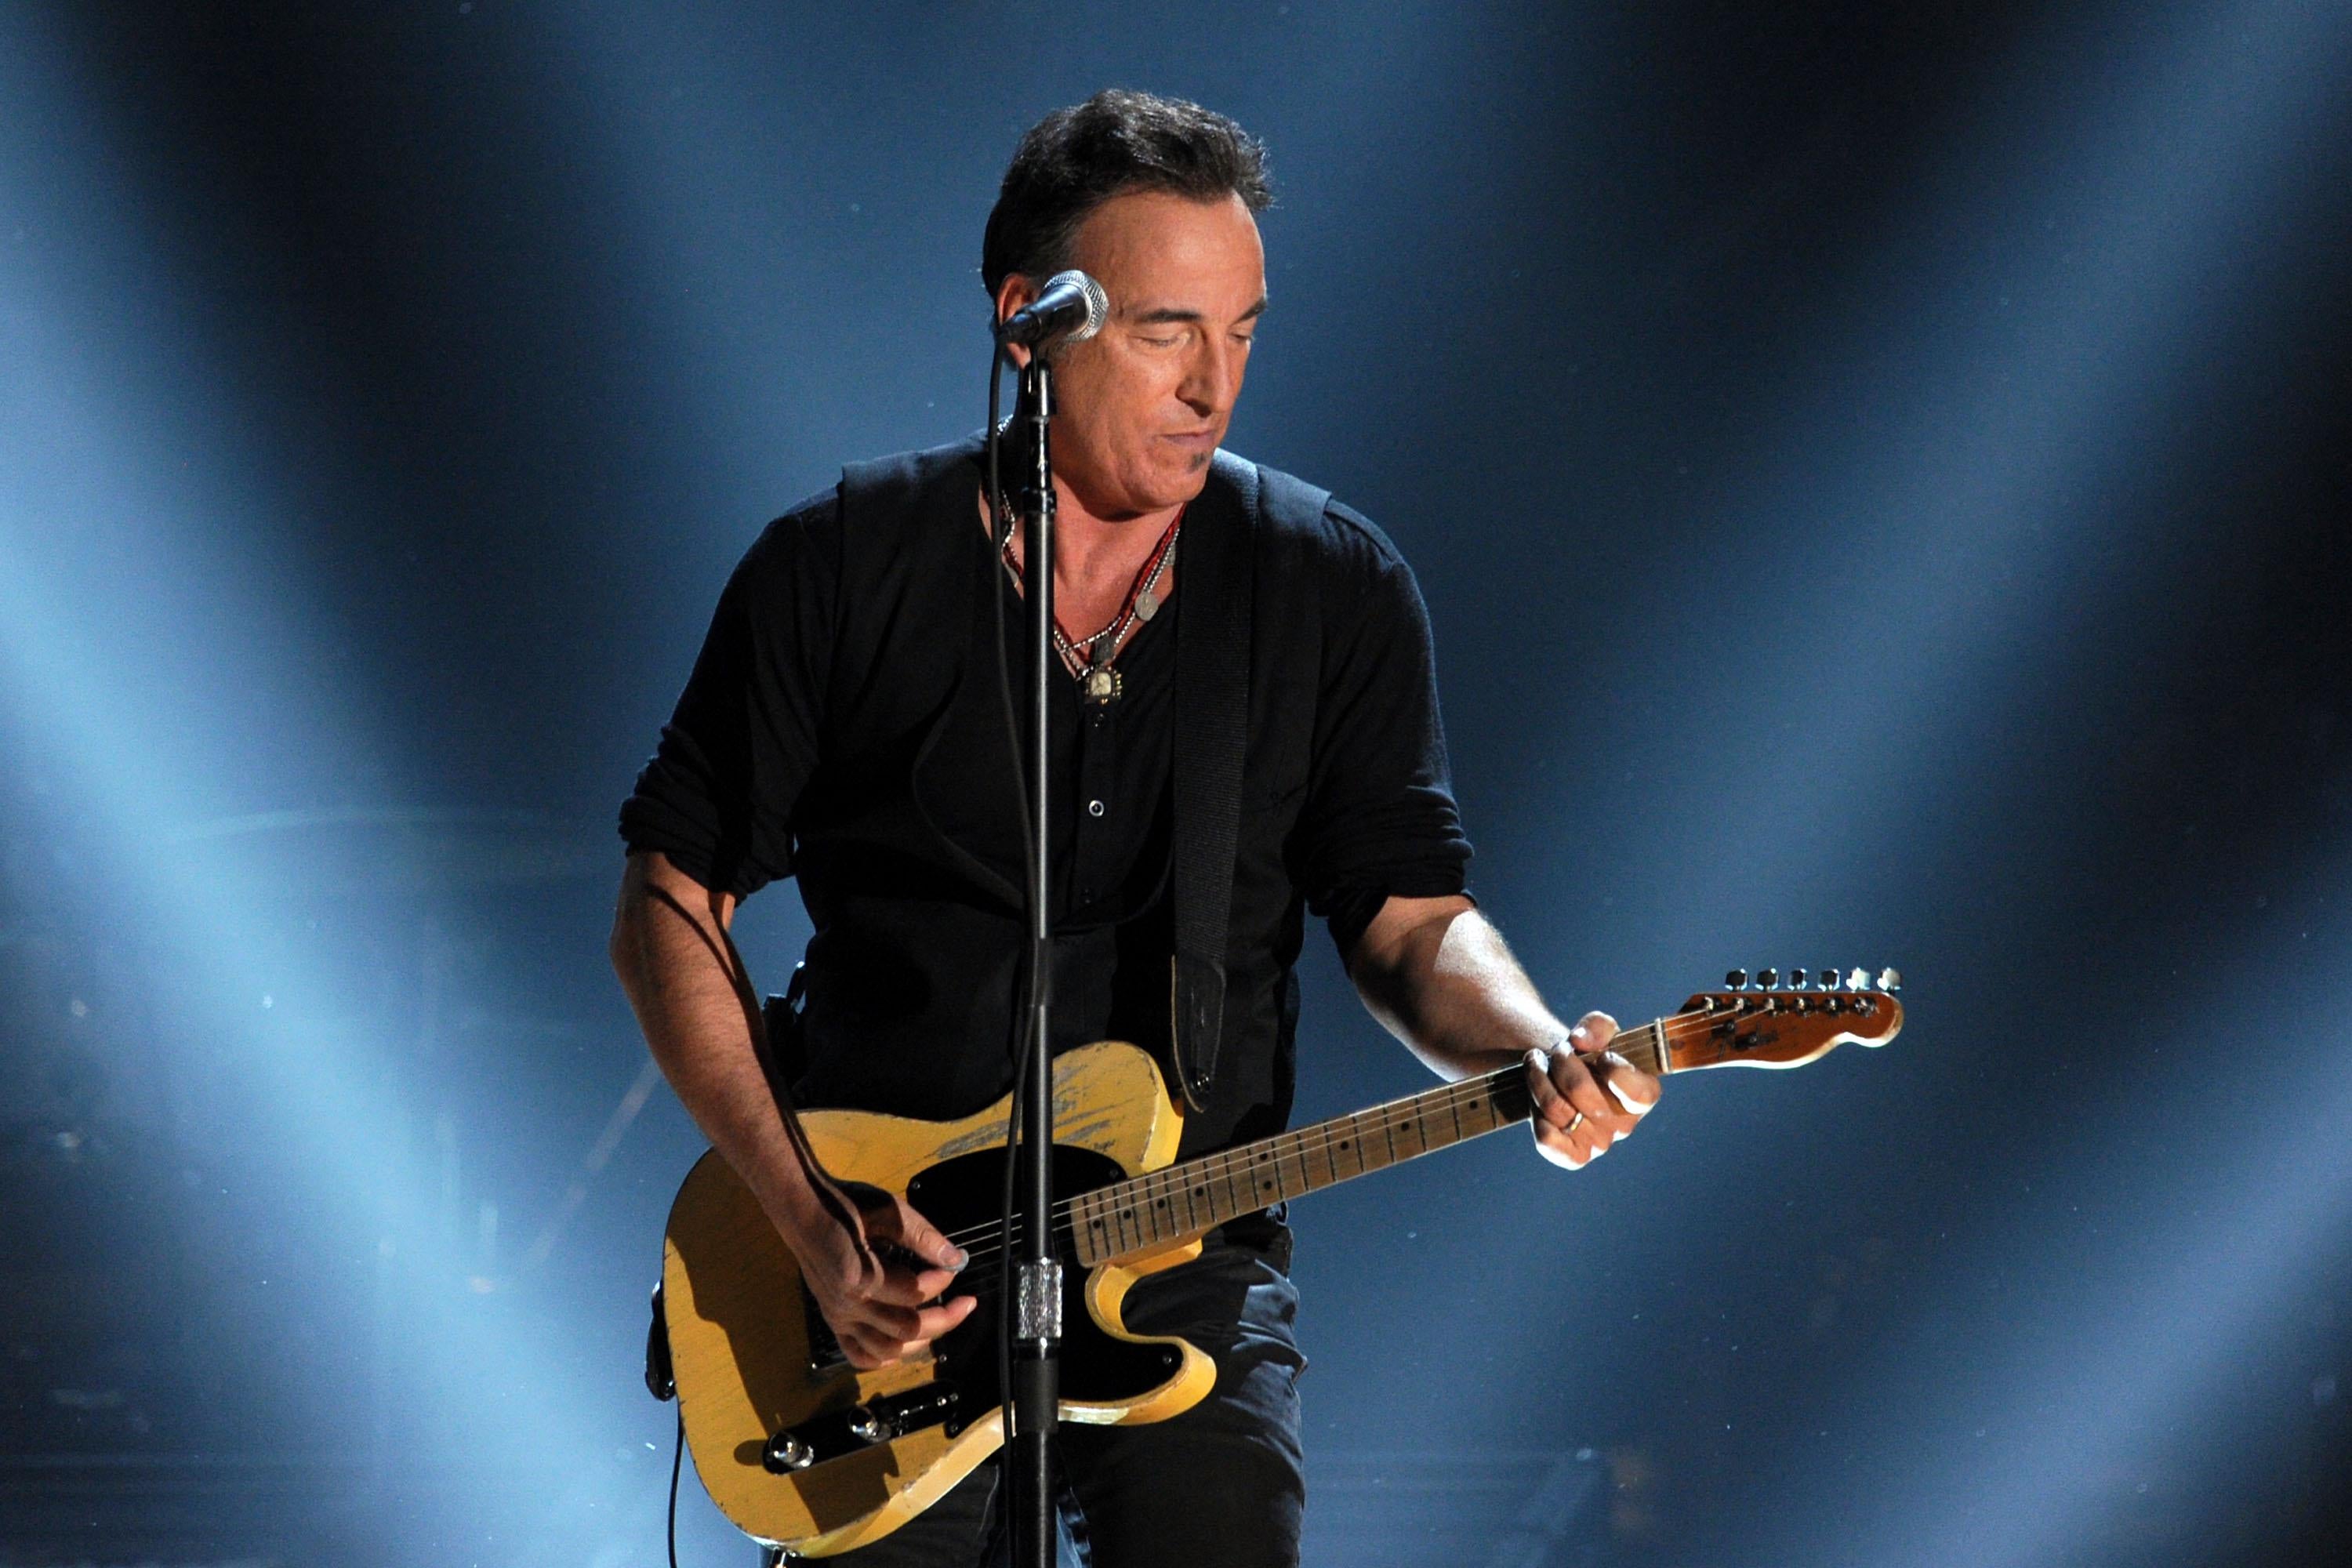 Springsteen plays guitar onstage.